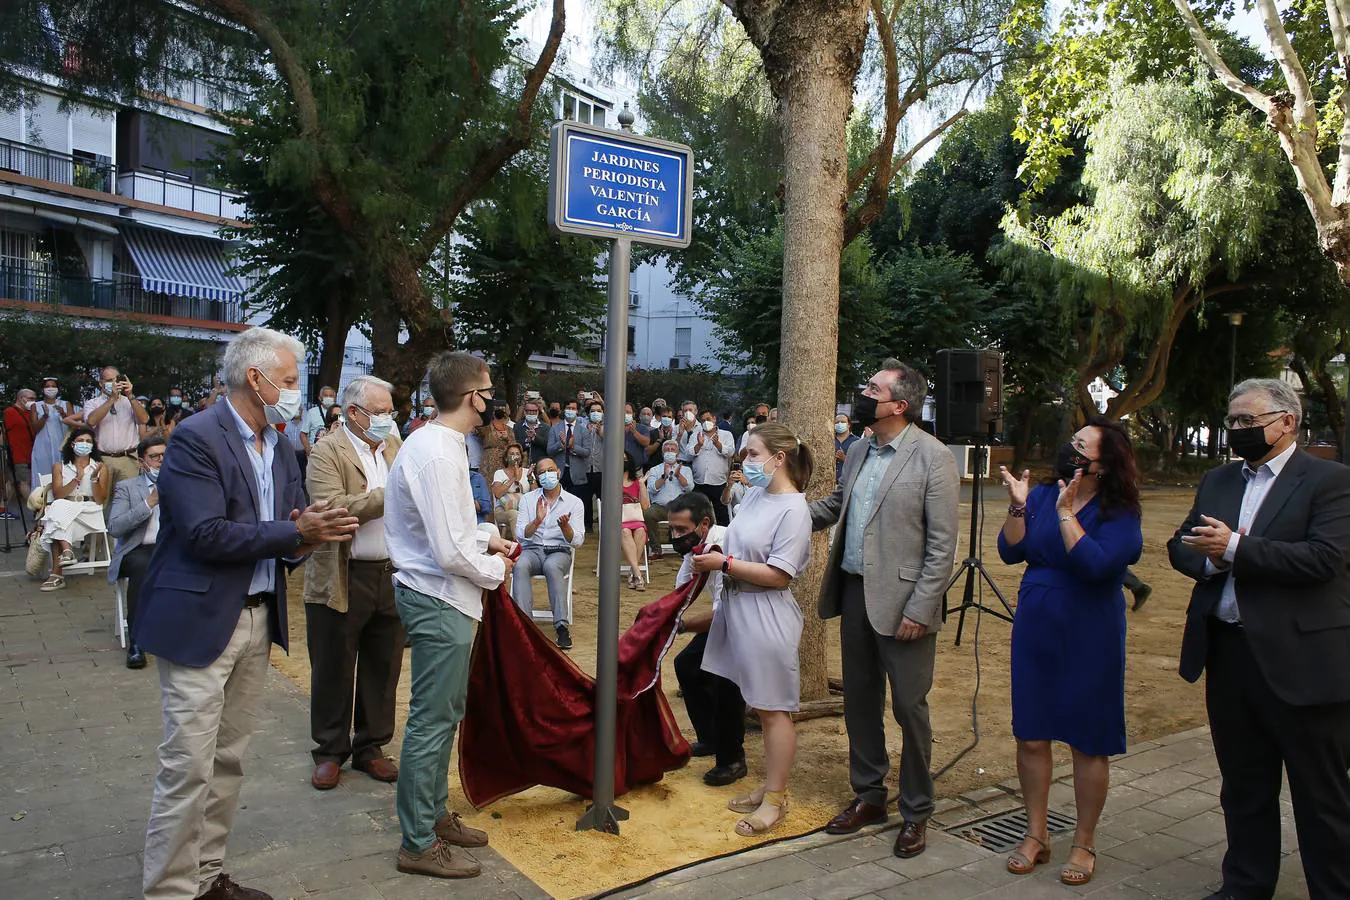 Con la nueva denominación de estos jardines que se encuentran entre la calle Termancia y Manuel Arellano se rinde homenaje al periodista nacido en Madird pero afincado en Sevilla desde hacía 27 años.